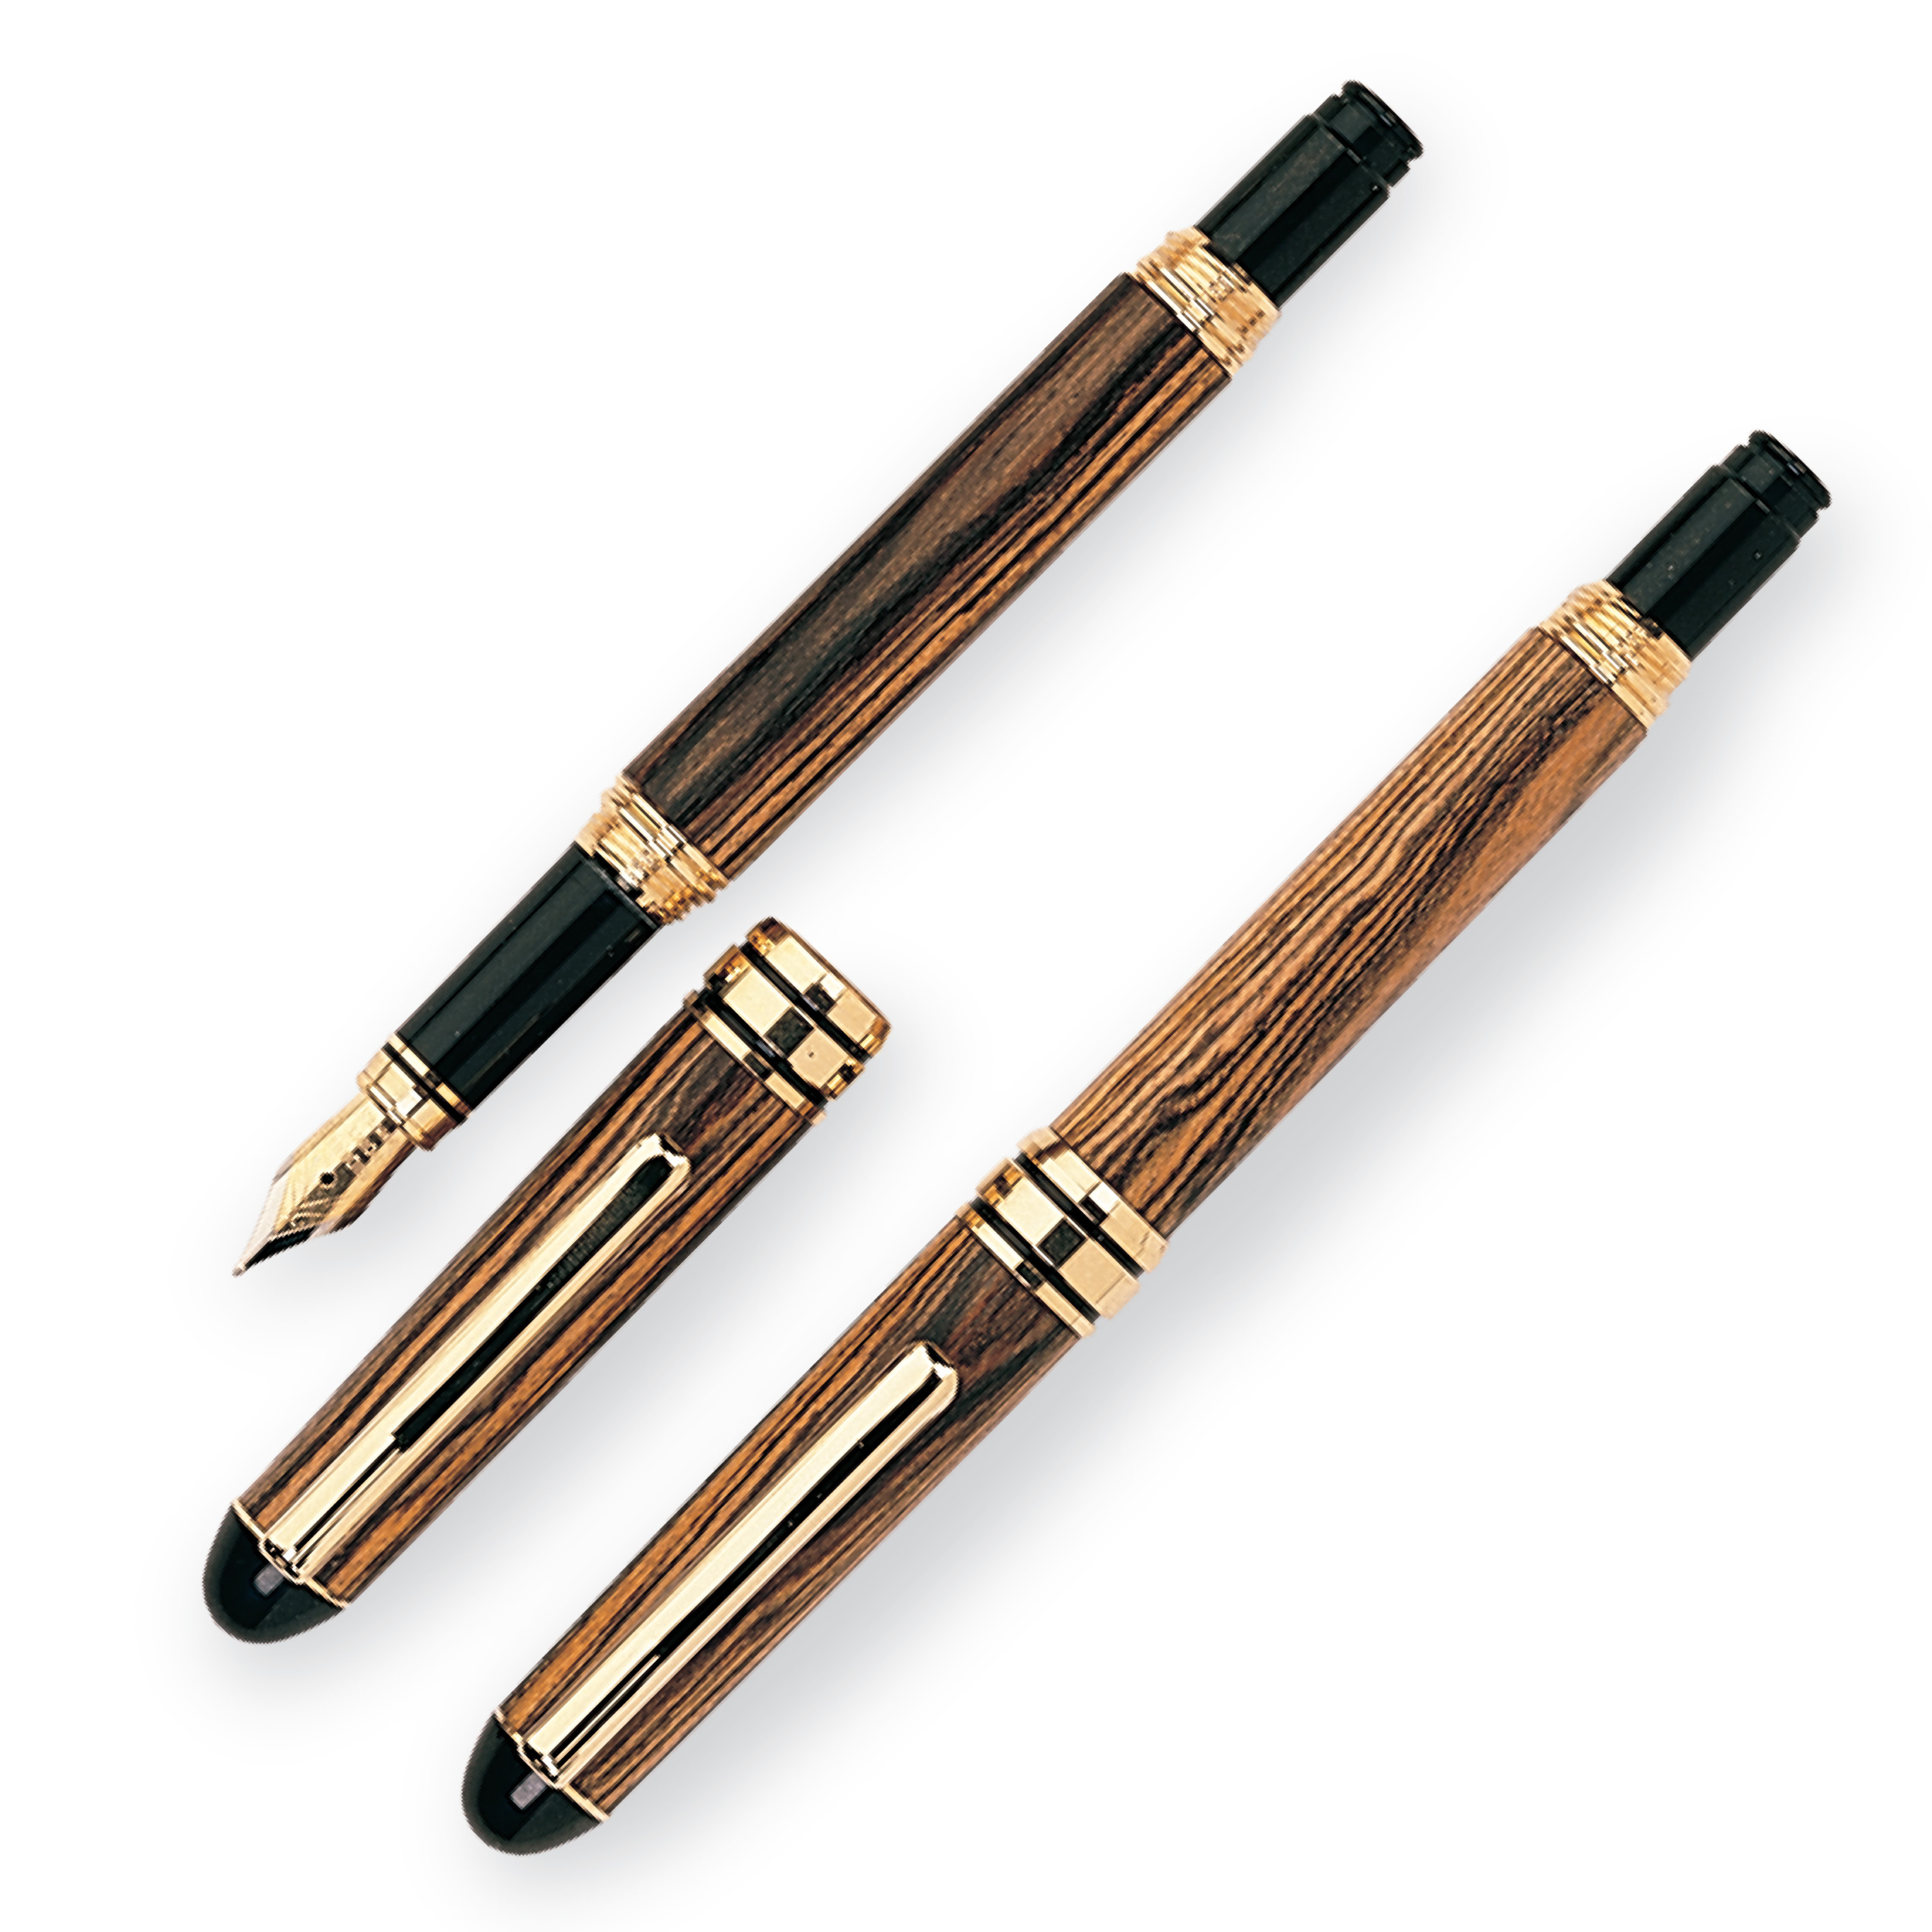 European Style Screw Cap Fountain Pen Kit - Gold